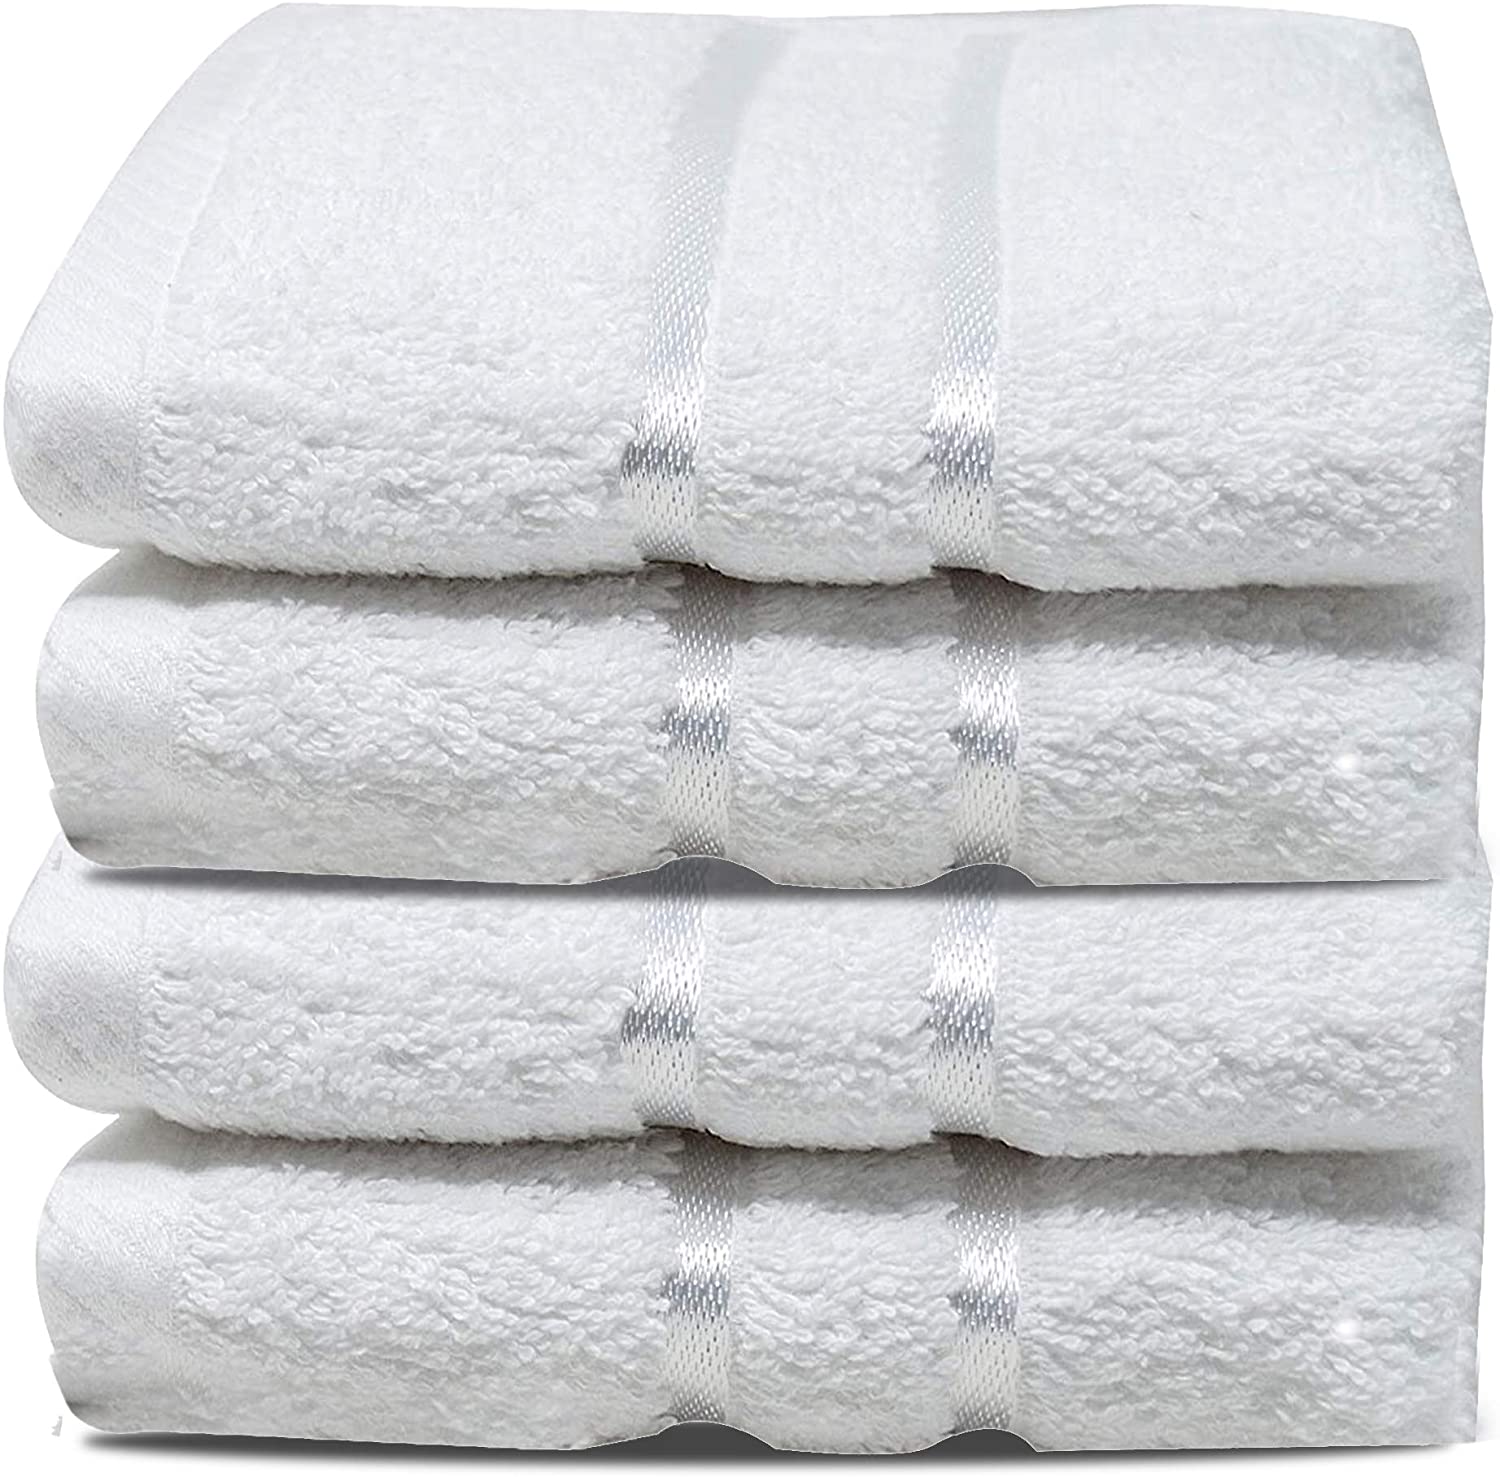 Casandra-High-Quality-Washcloths